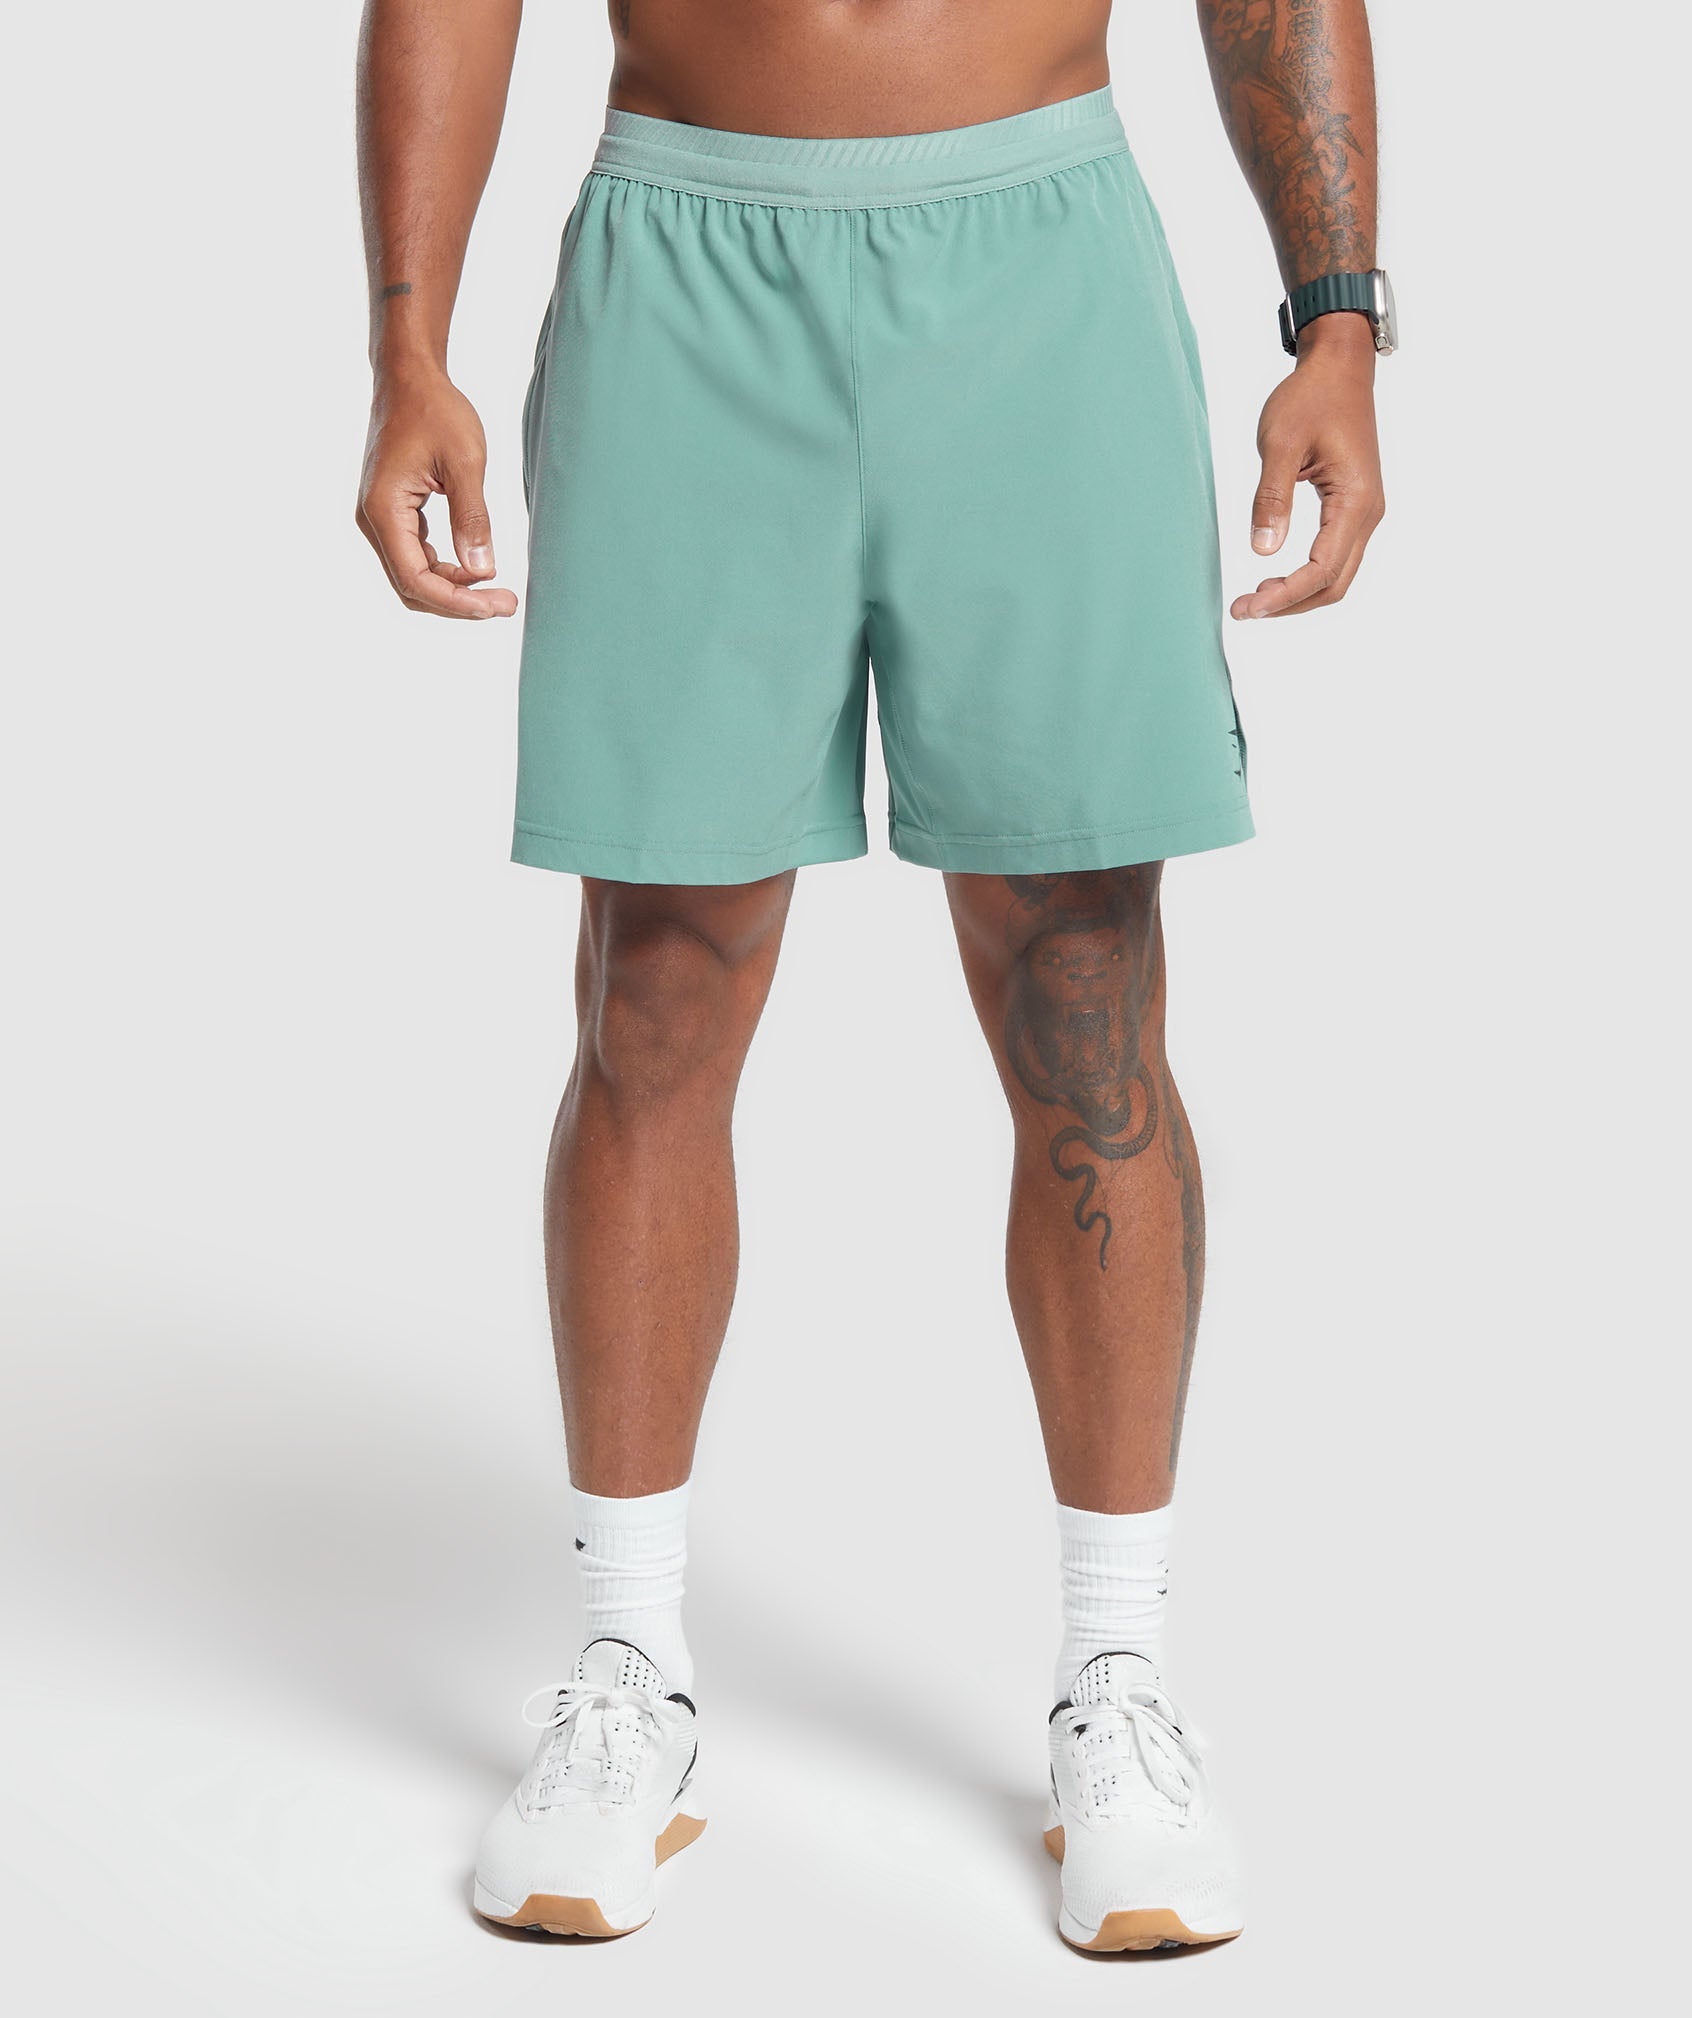 Apex 7" Hybrid Shorts